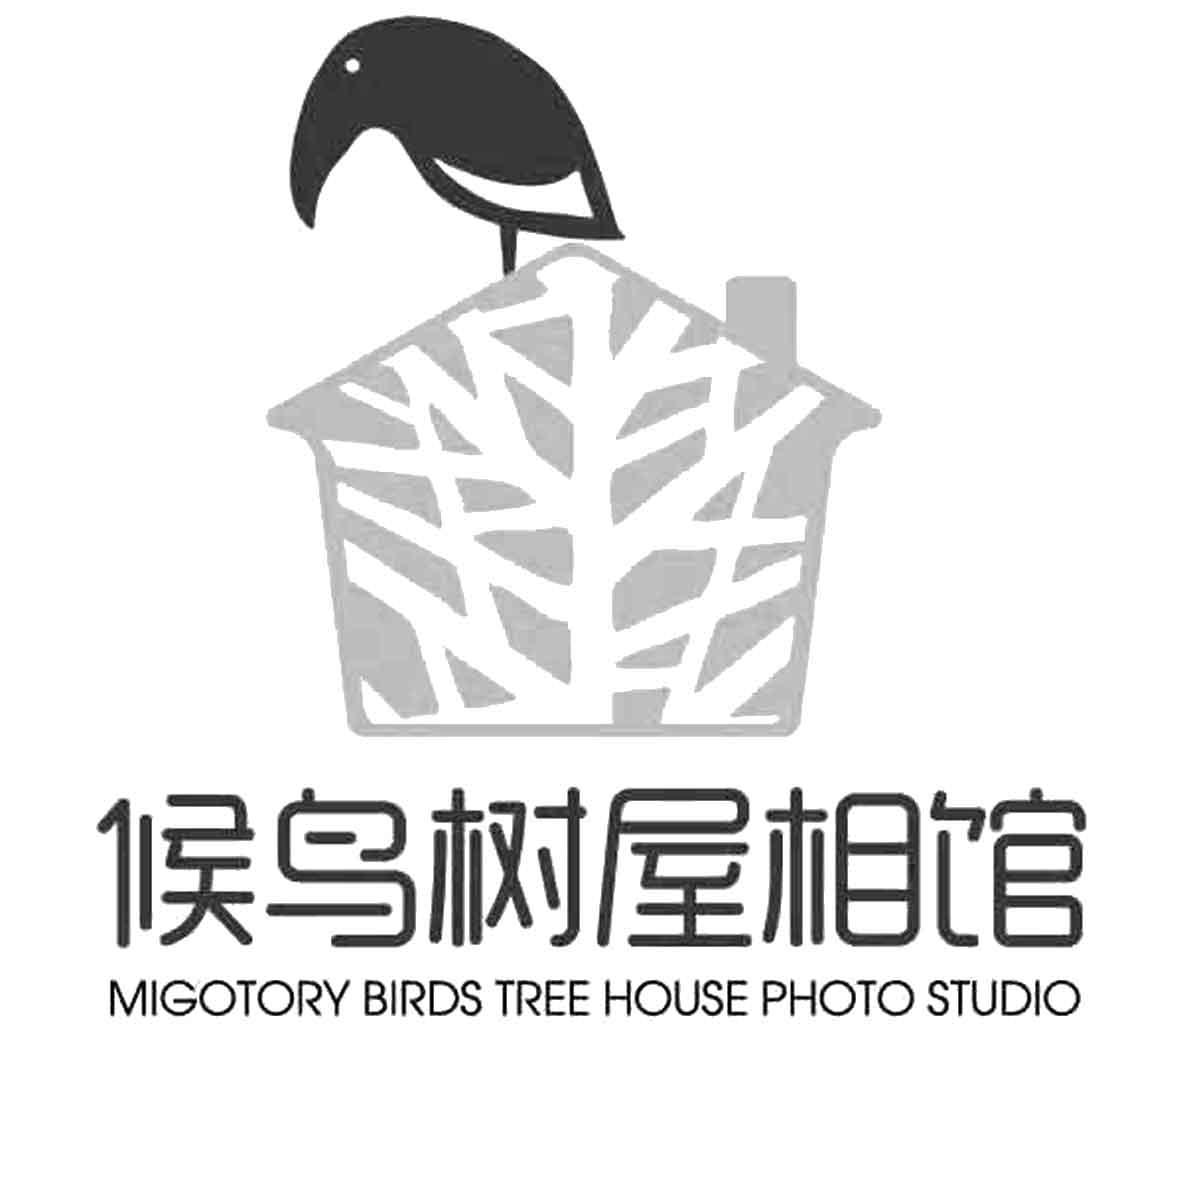 候鸟树屋相馆 MIGOTORY BIRDS TREE HOUSE PHOTO STUDIO